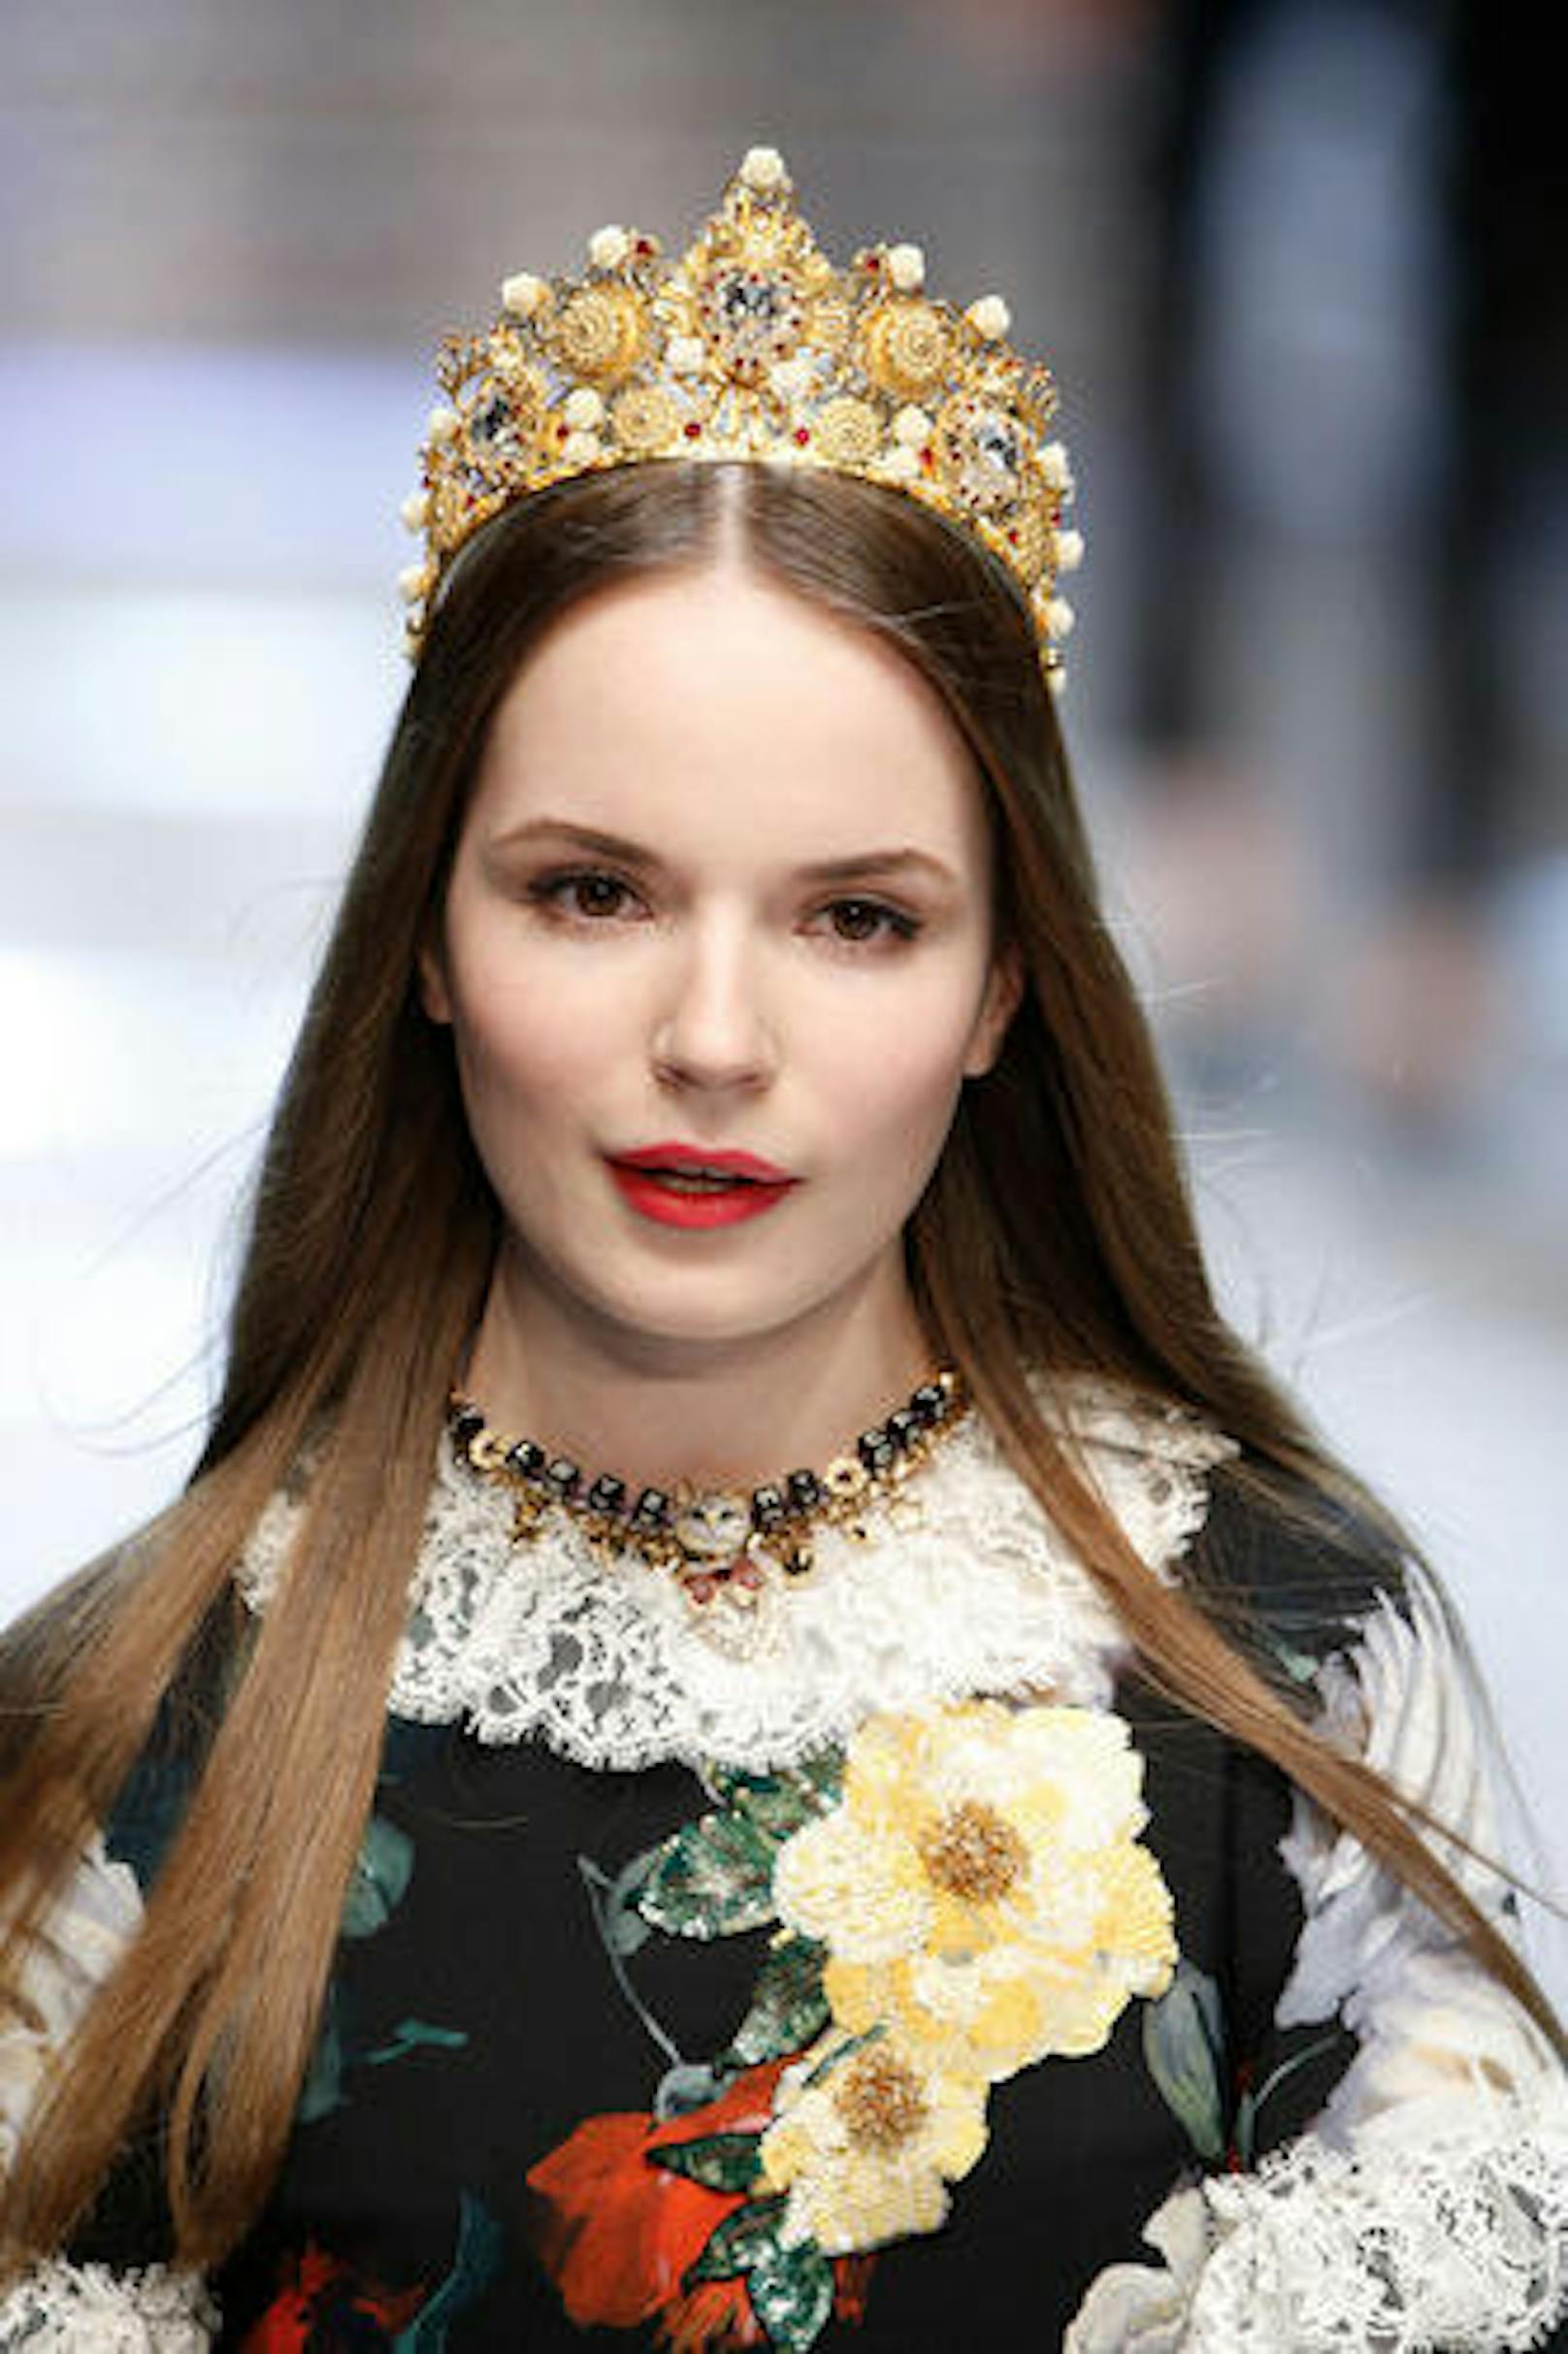 Look von der aktuellen Herbst-Winterkollektion von Dolce & Gabbana